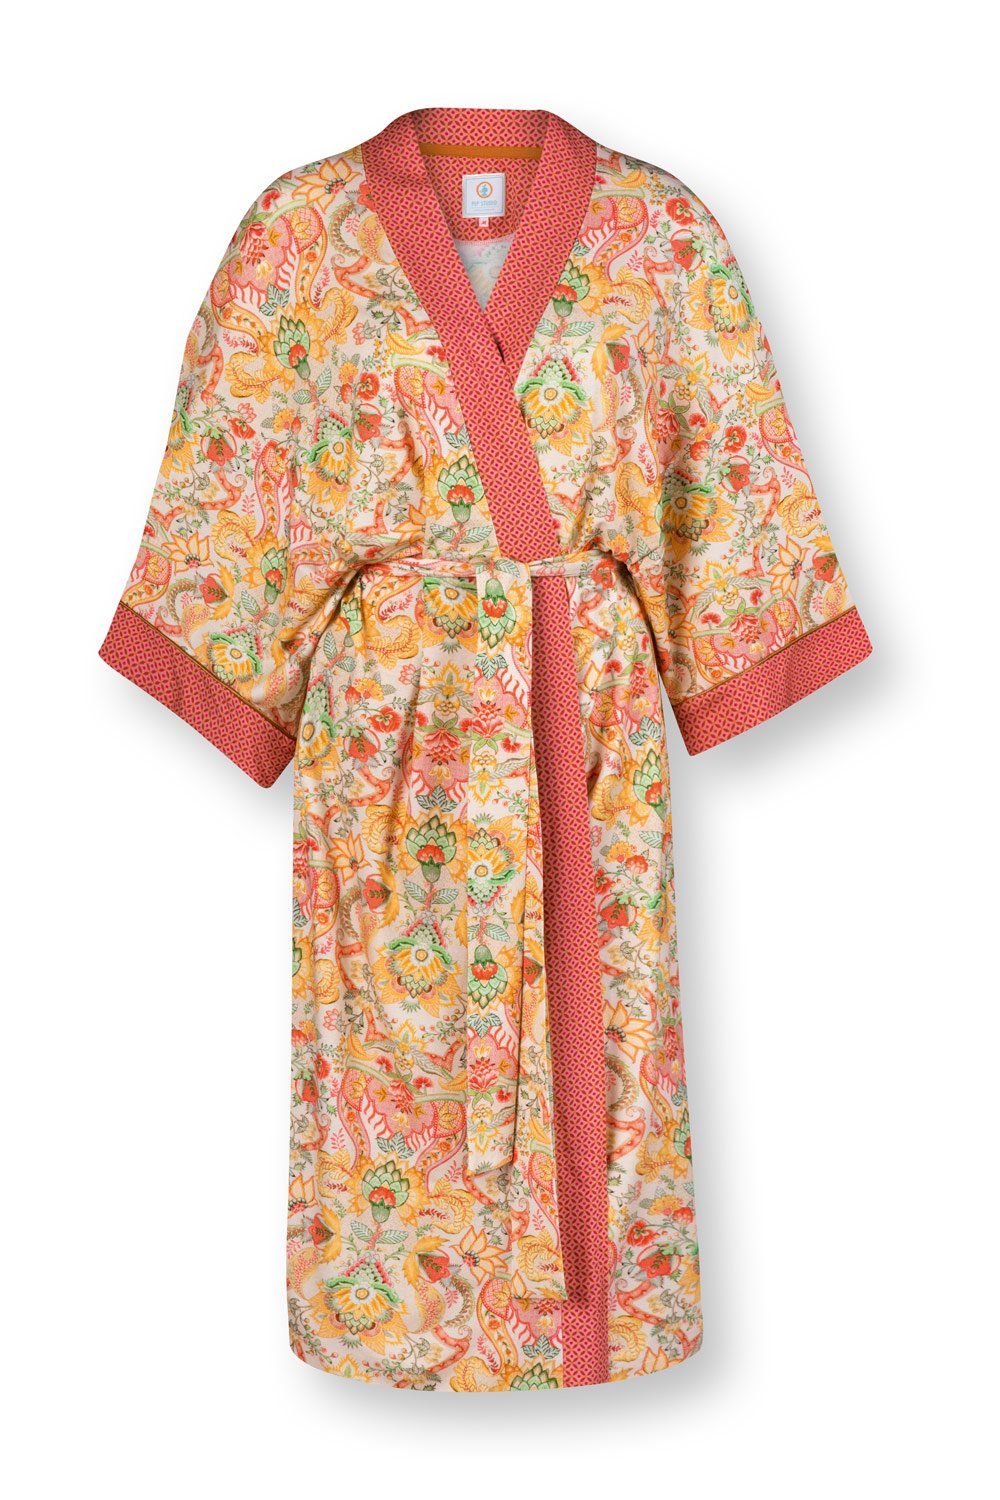 PiP Studio Kyoto Kimono Festival kurz Noelle 51510345-348, Kimono